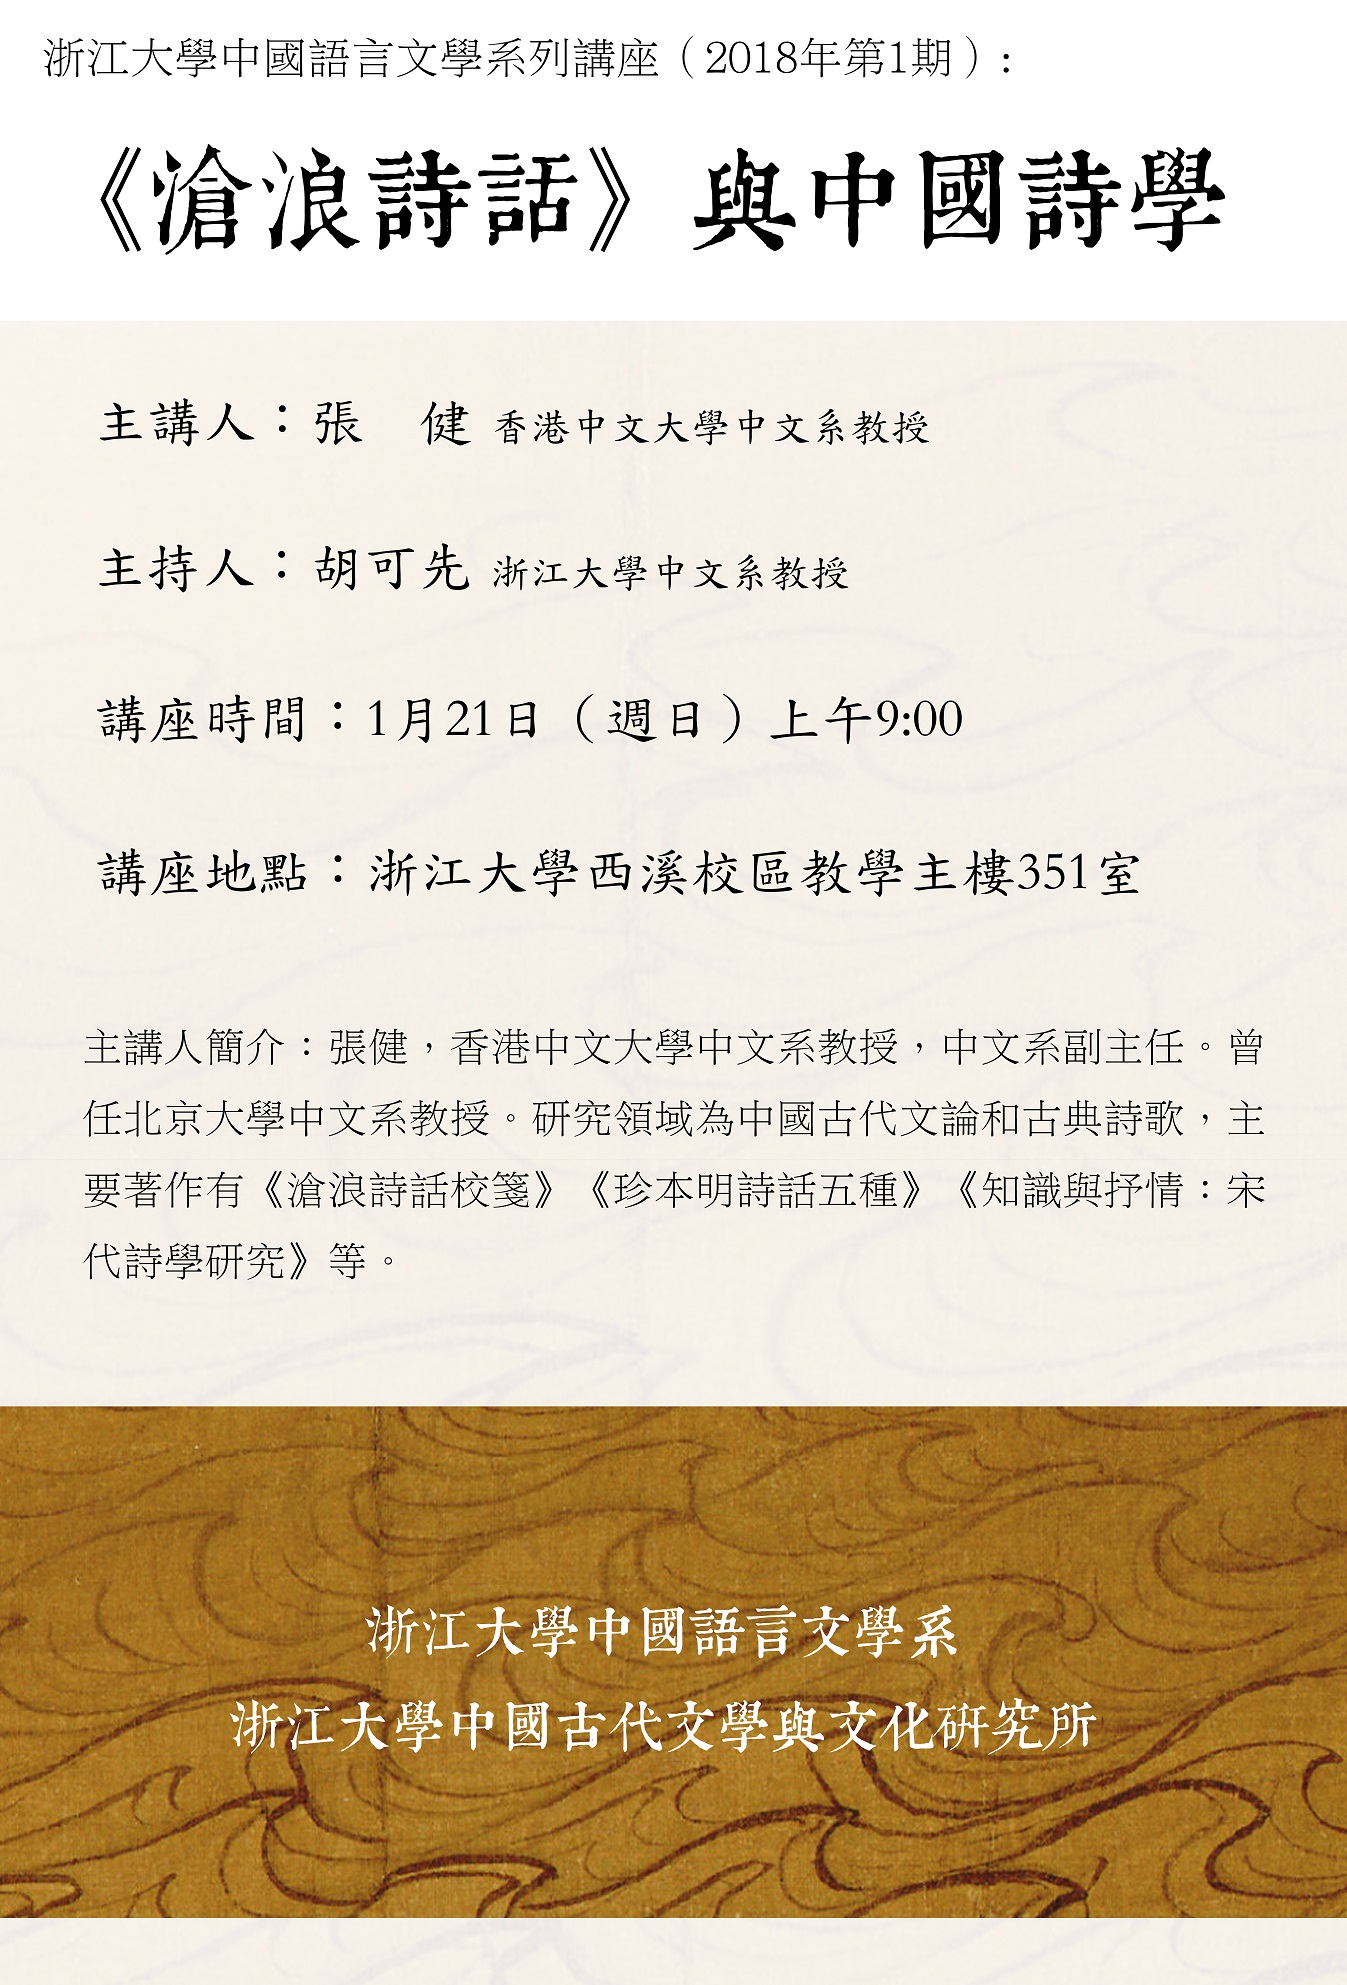 浙江大学中国语言文学系列讲座：《沧浪诗话》与中国诗学.jpg